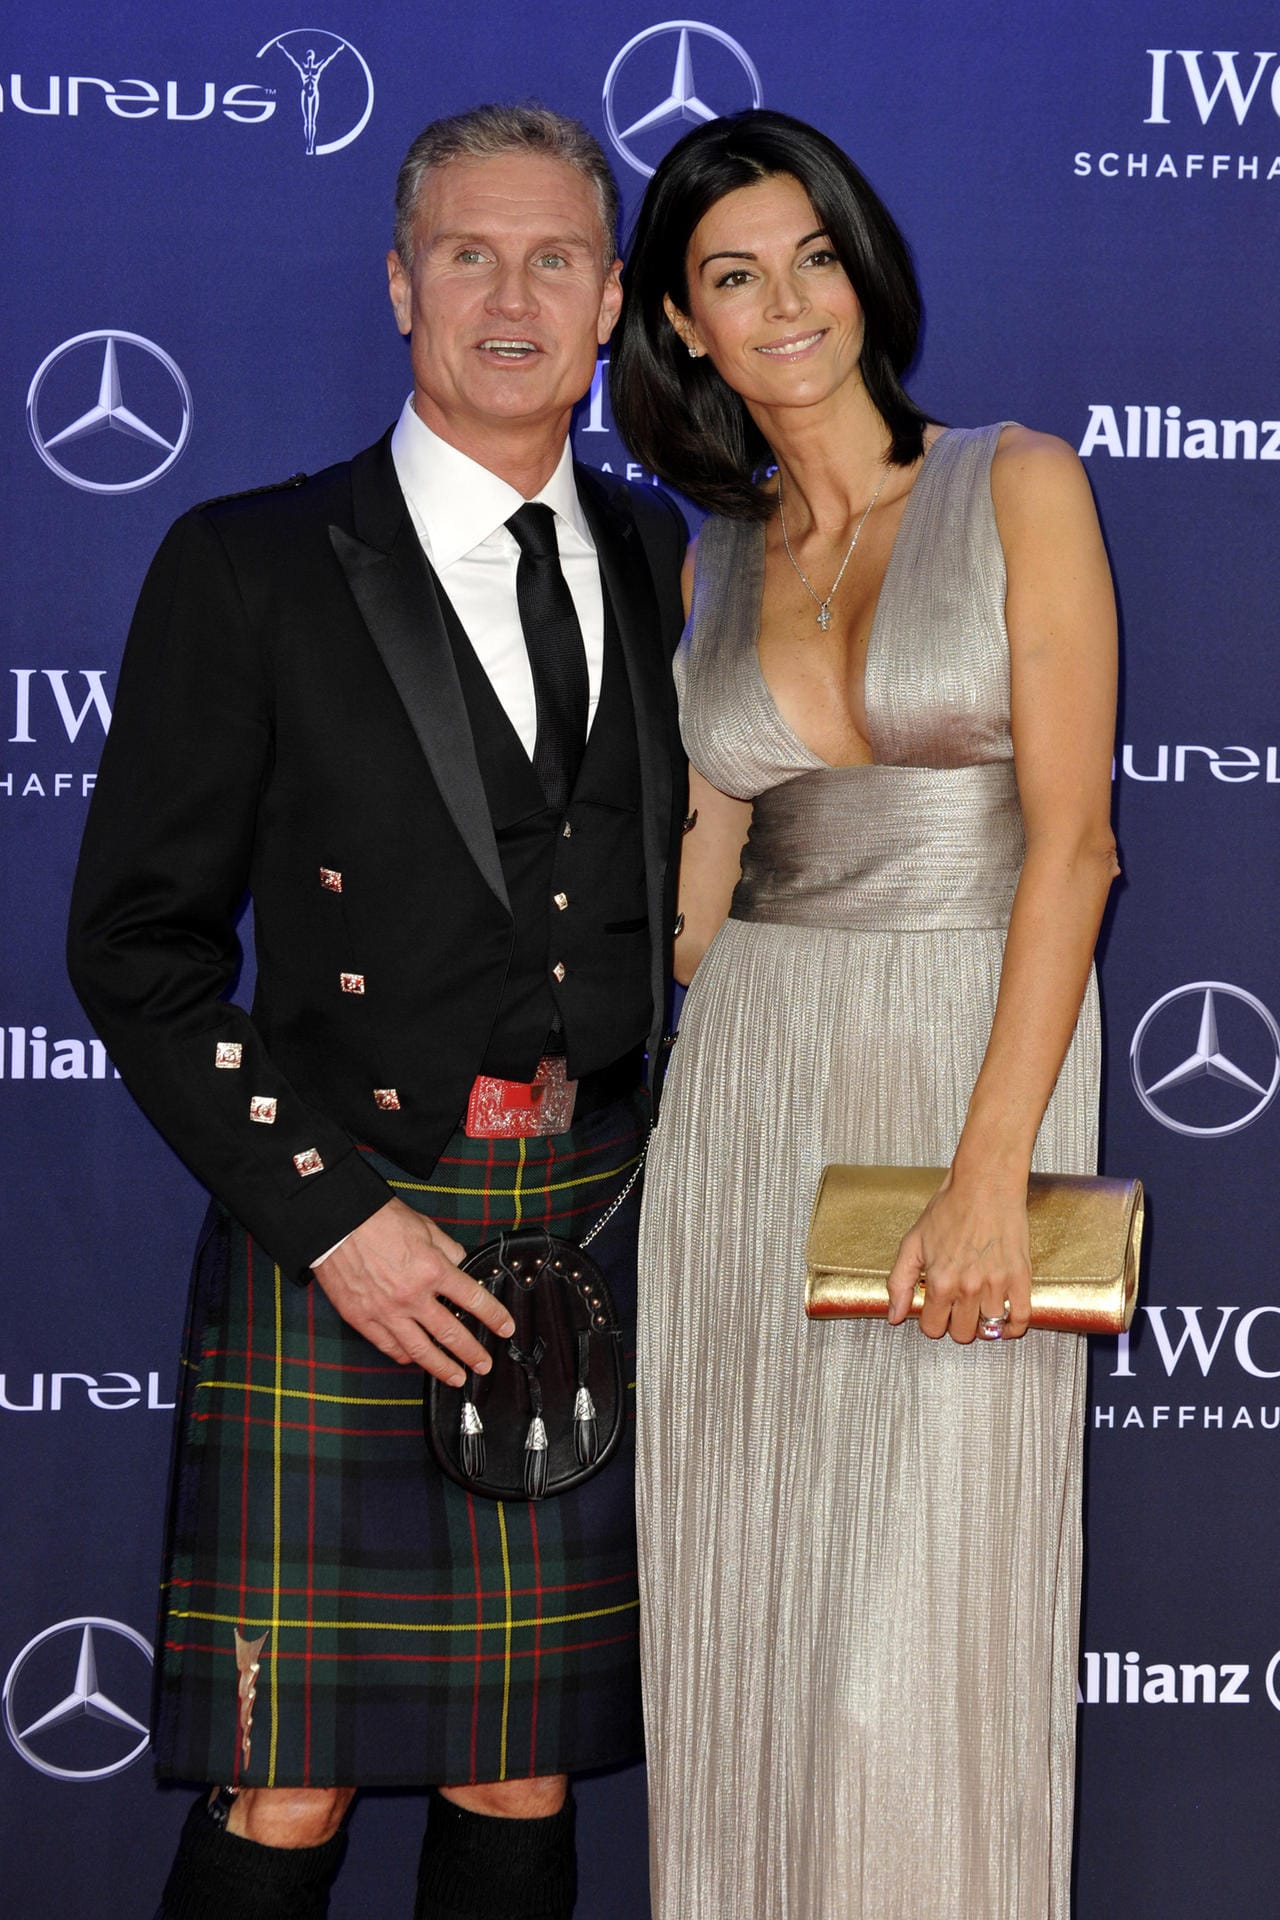 David Coulthard im Schottenrock, seine Liebste Karen Minier im tiefdekolletierten Metallic-Kleid.